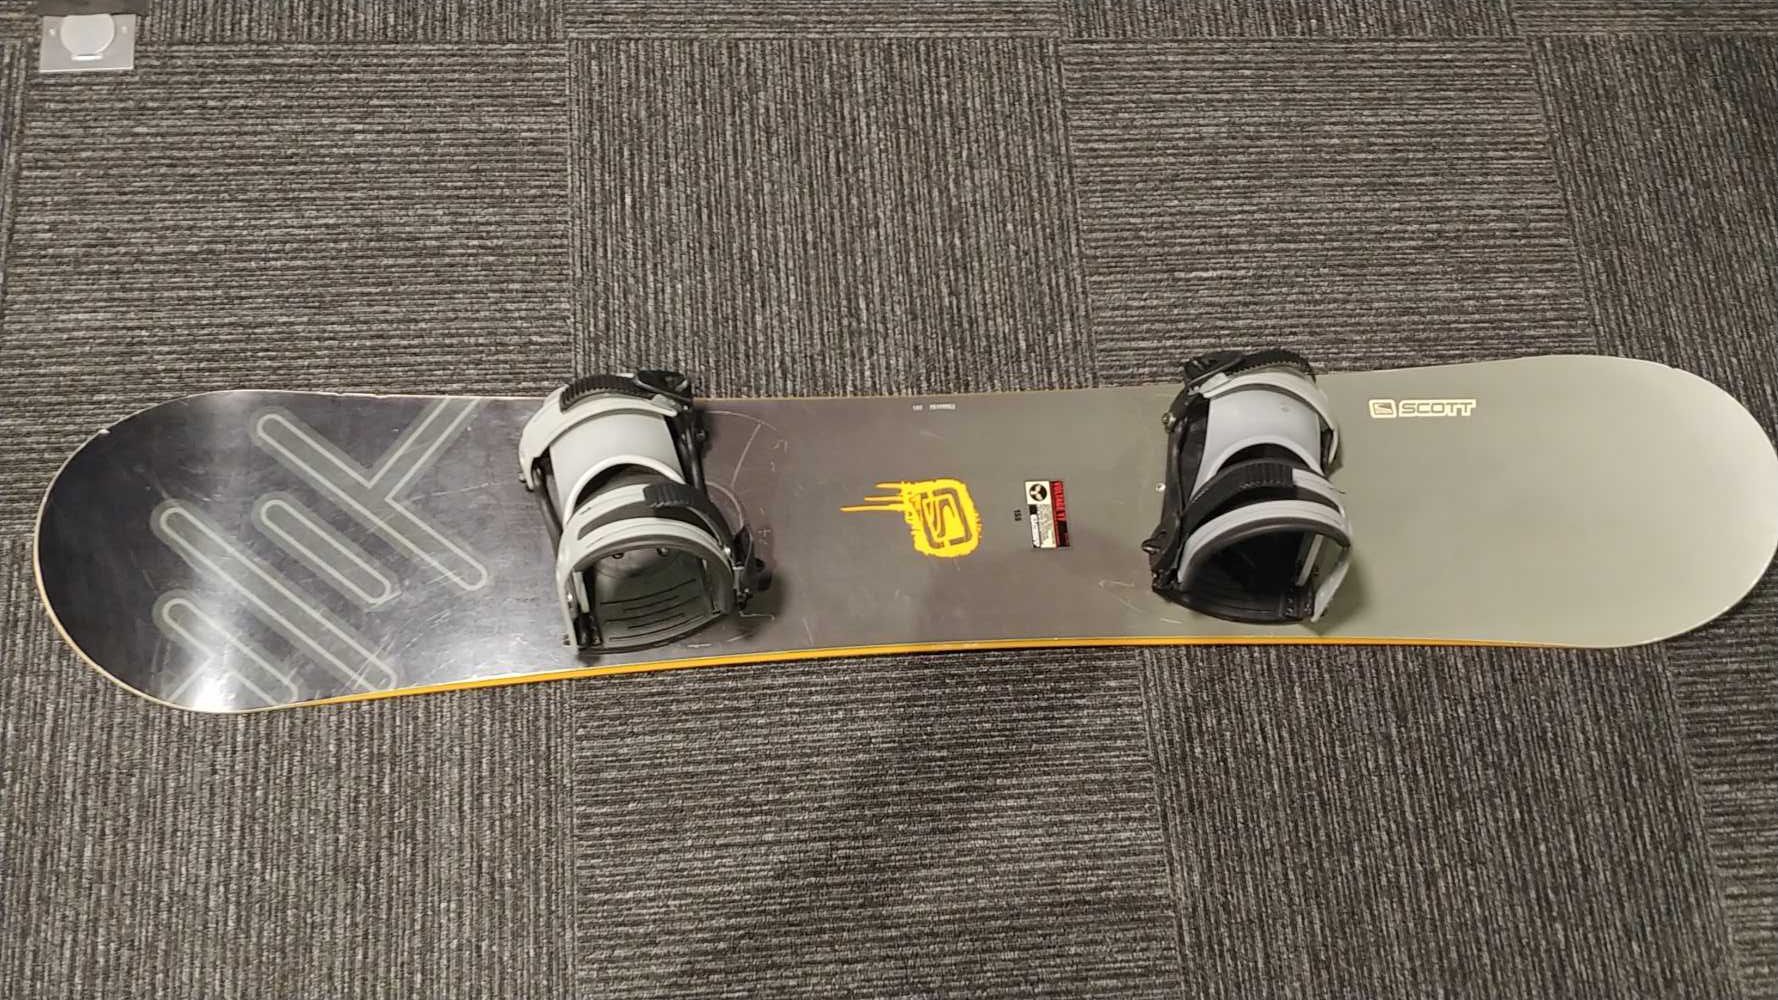 Deska snowboardowa SCOTT 155 cm - nasmarowana, gotowa do jazdy!